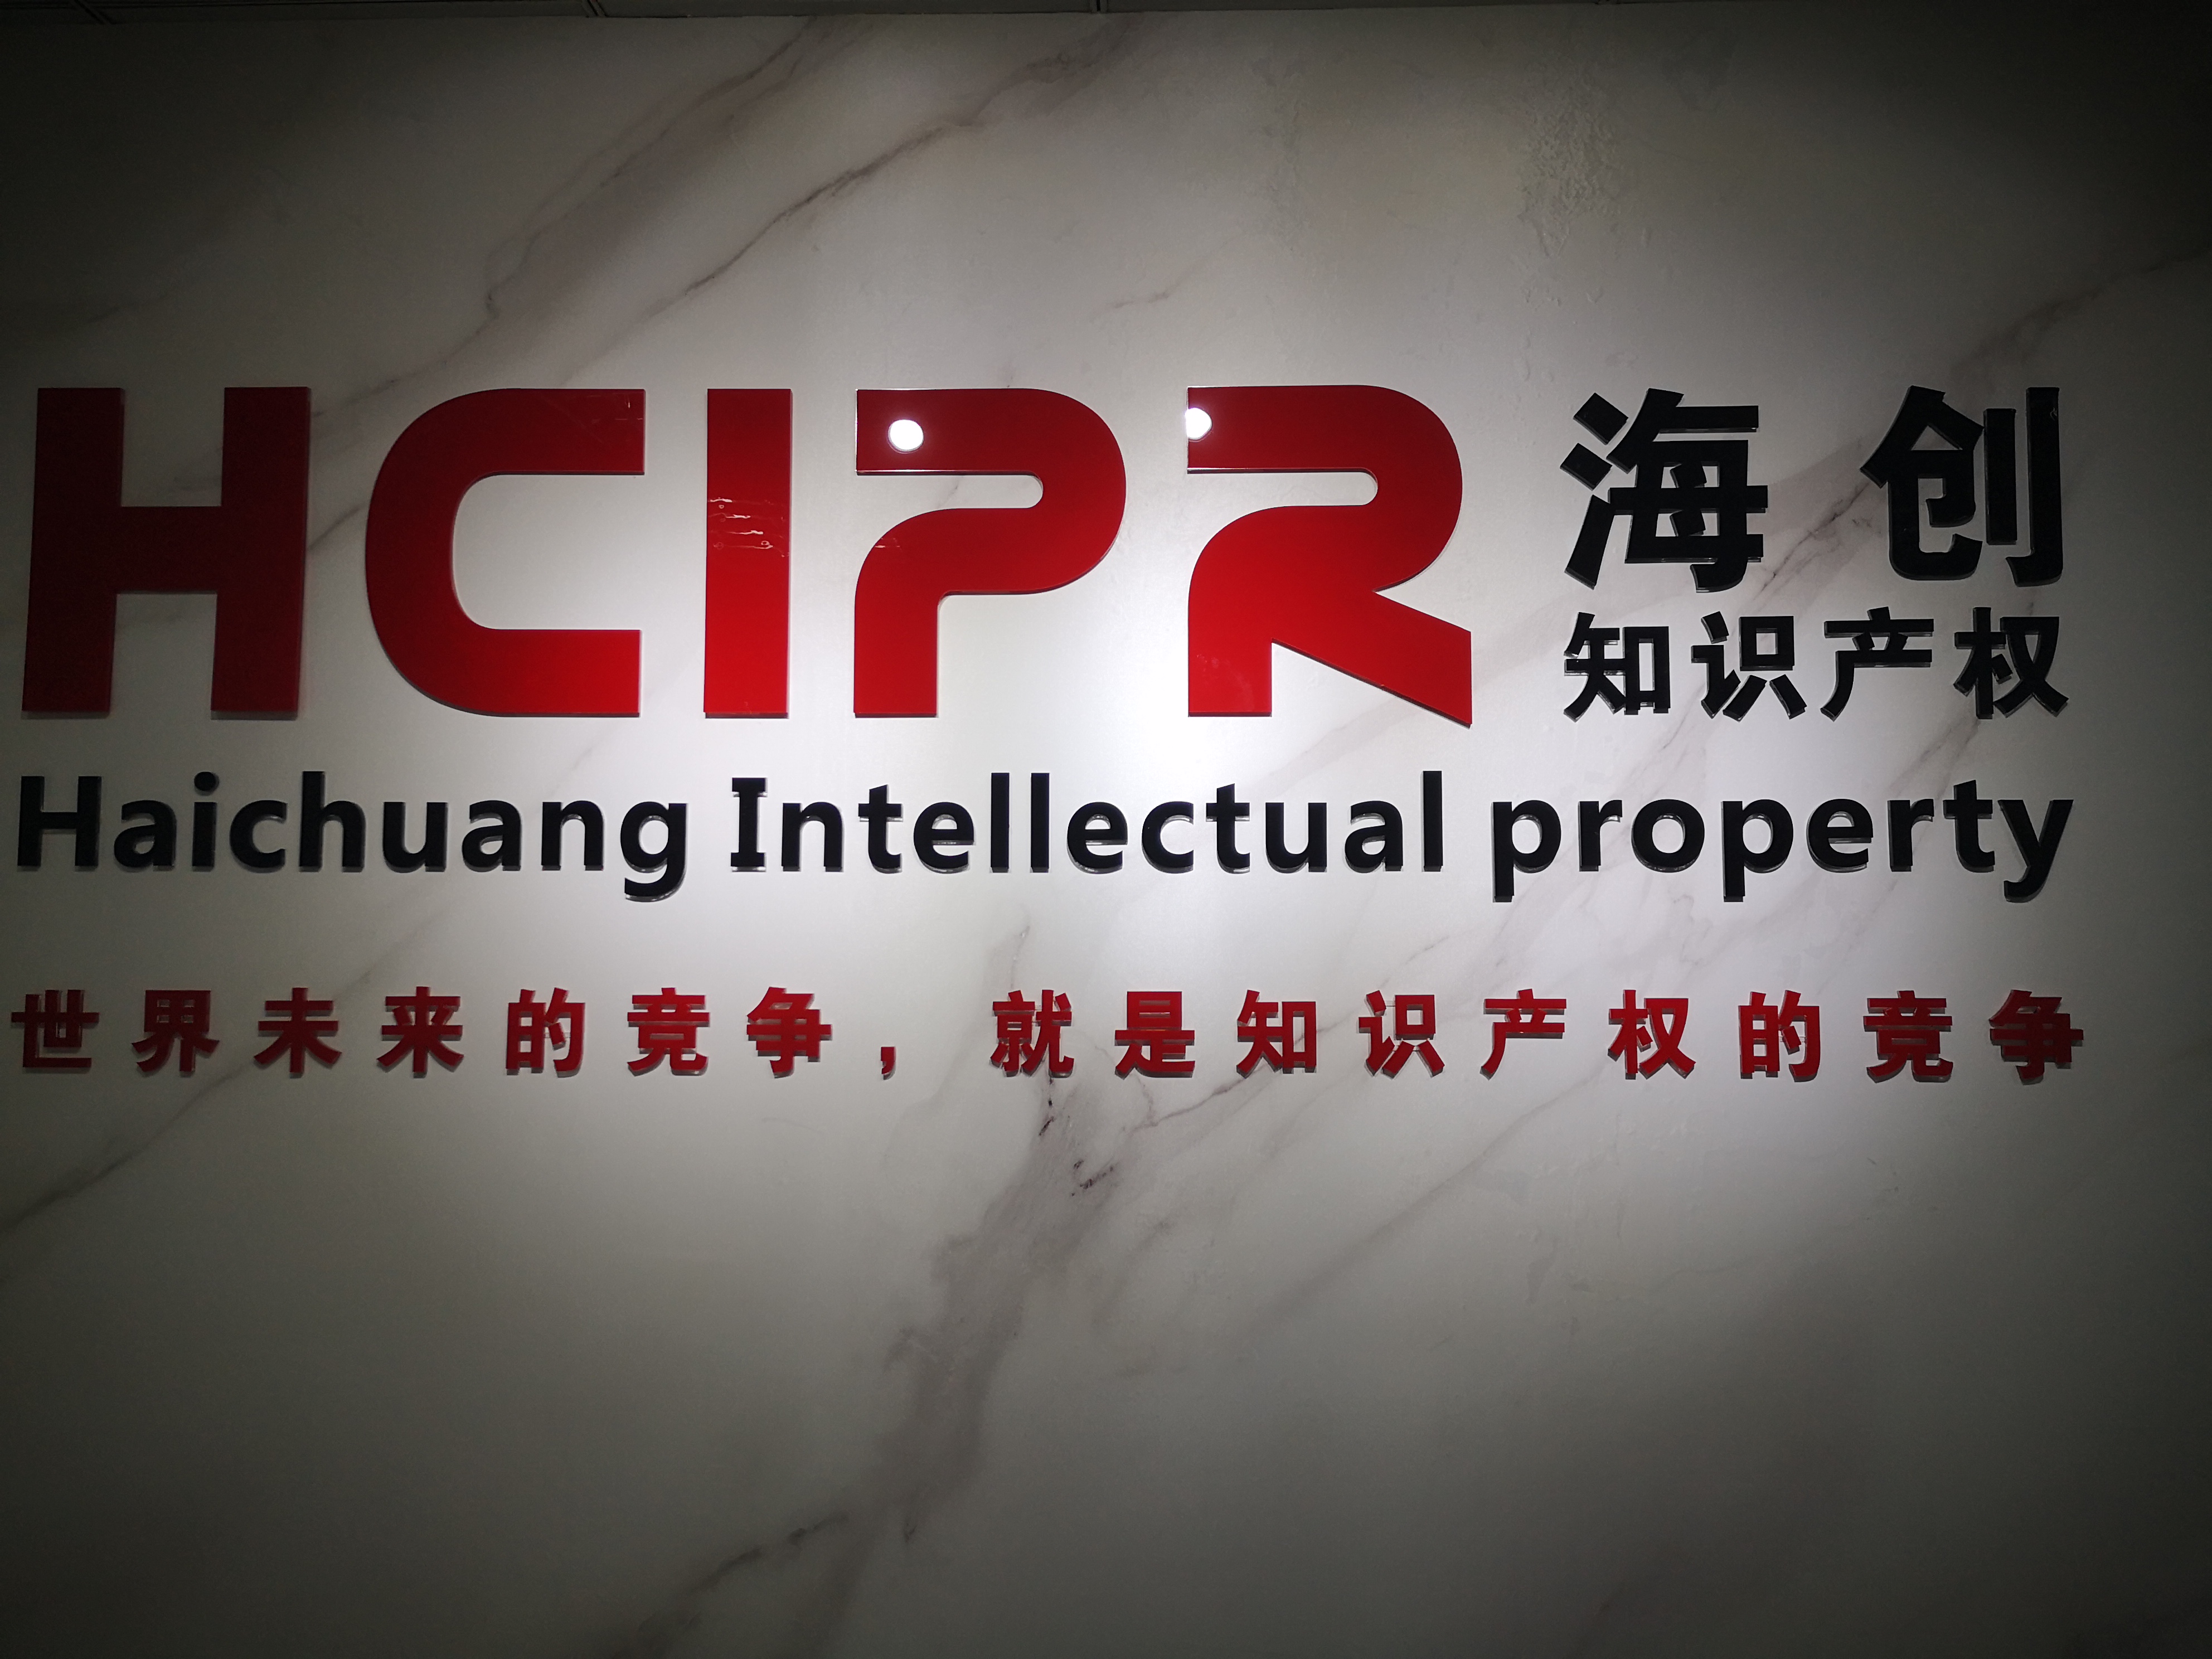 上海海创知识产权代理有限公司